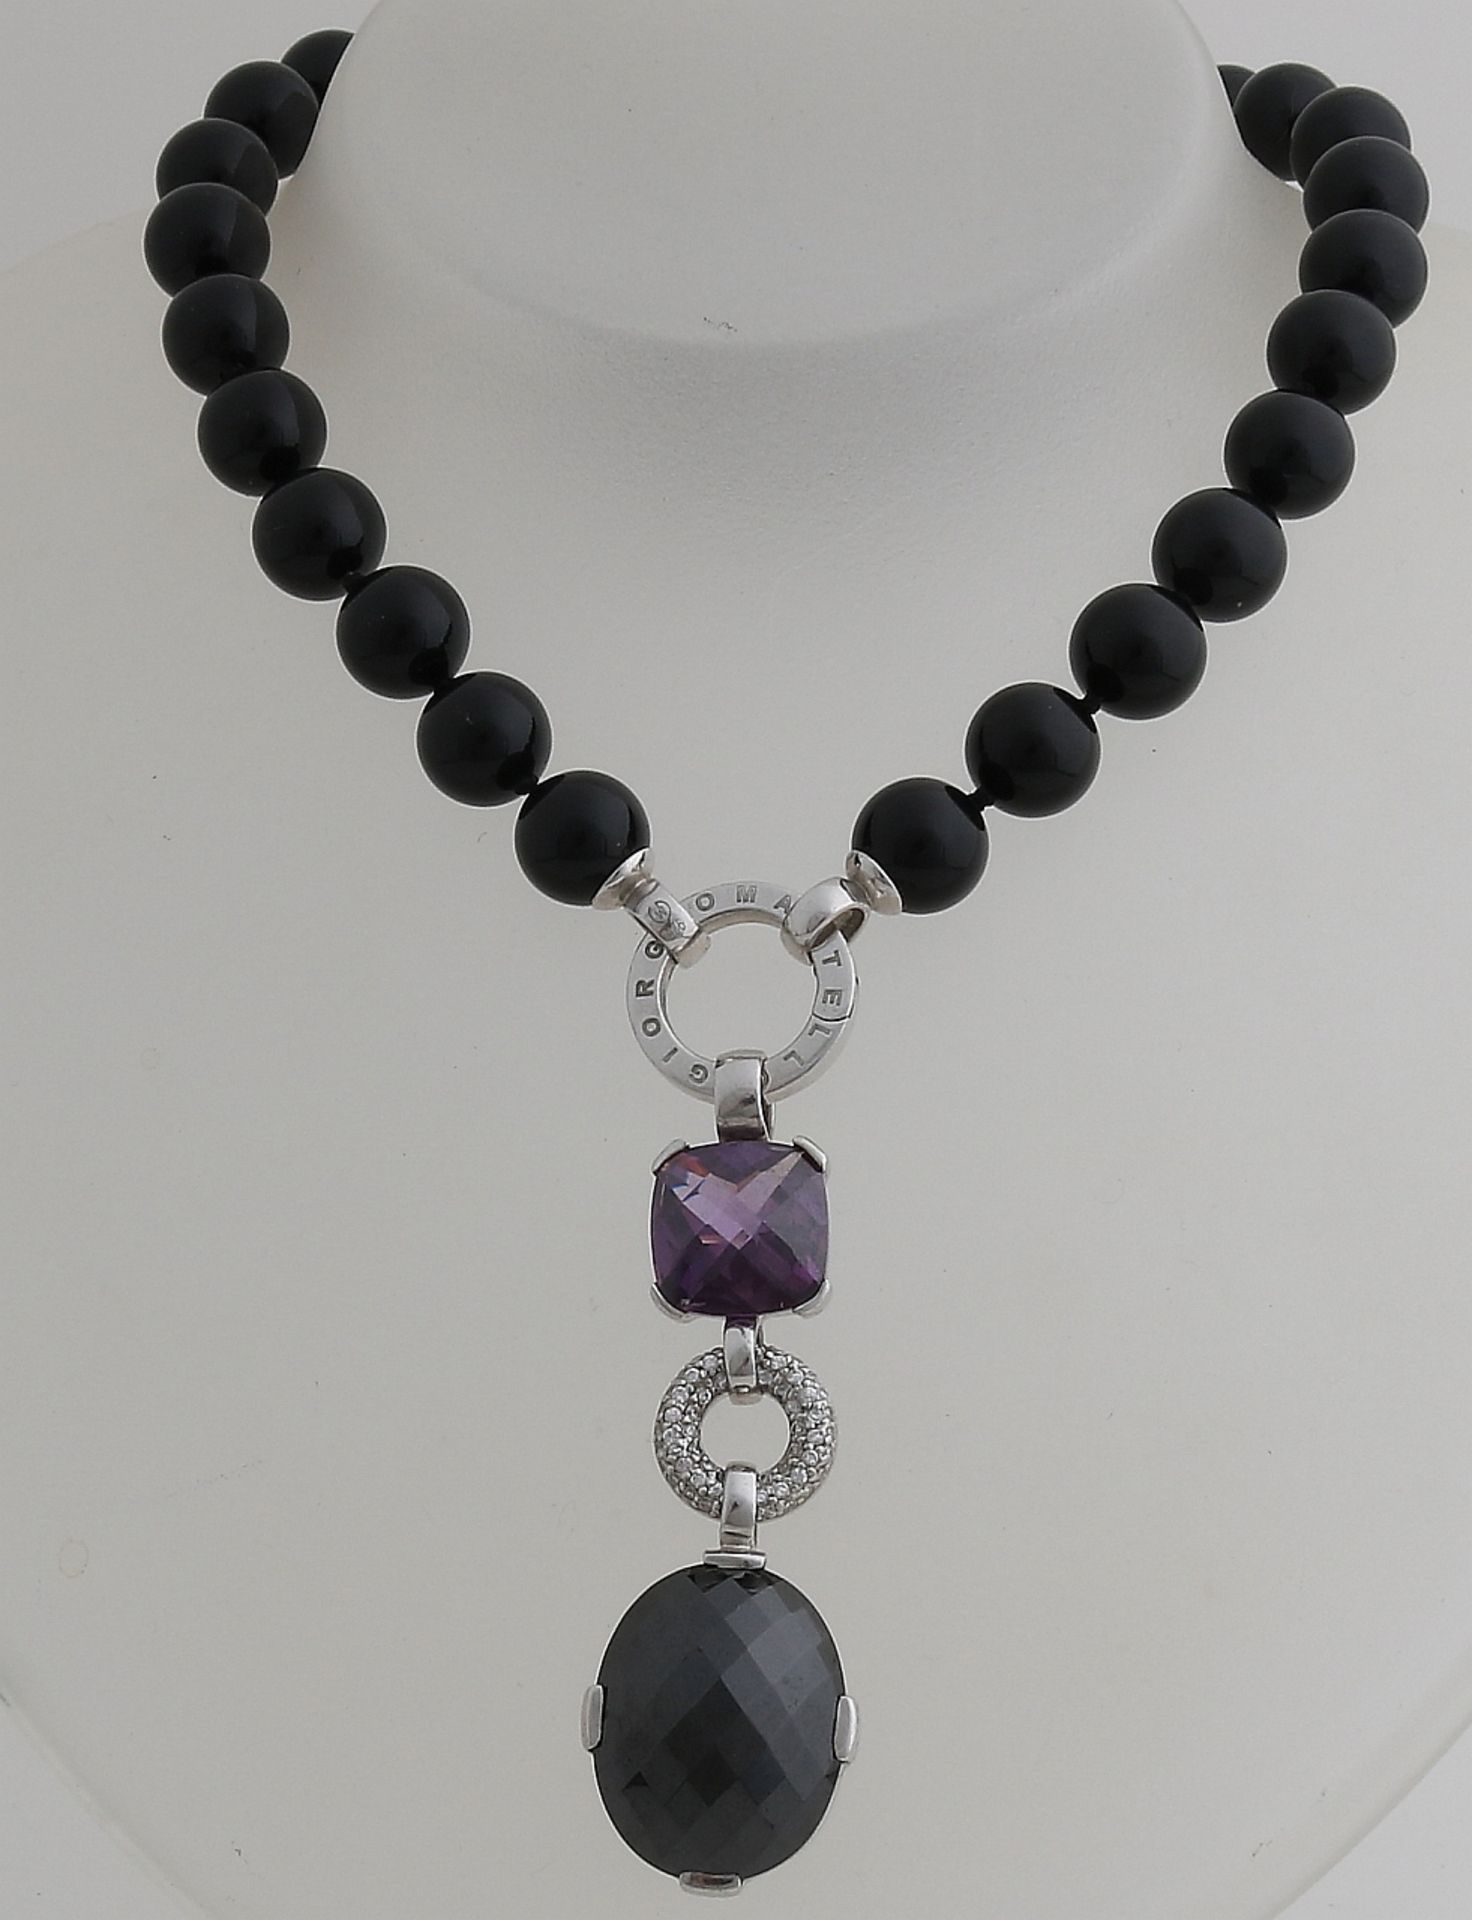 Halskette aus schwarzen Perlen mit einem silbernen Augenverschluss mit einem Anhänger, 9 cm, mit l